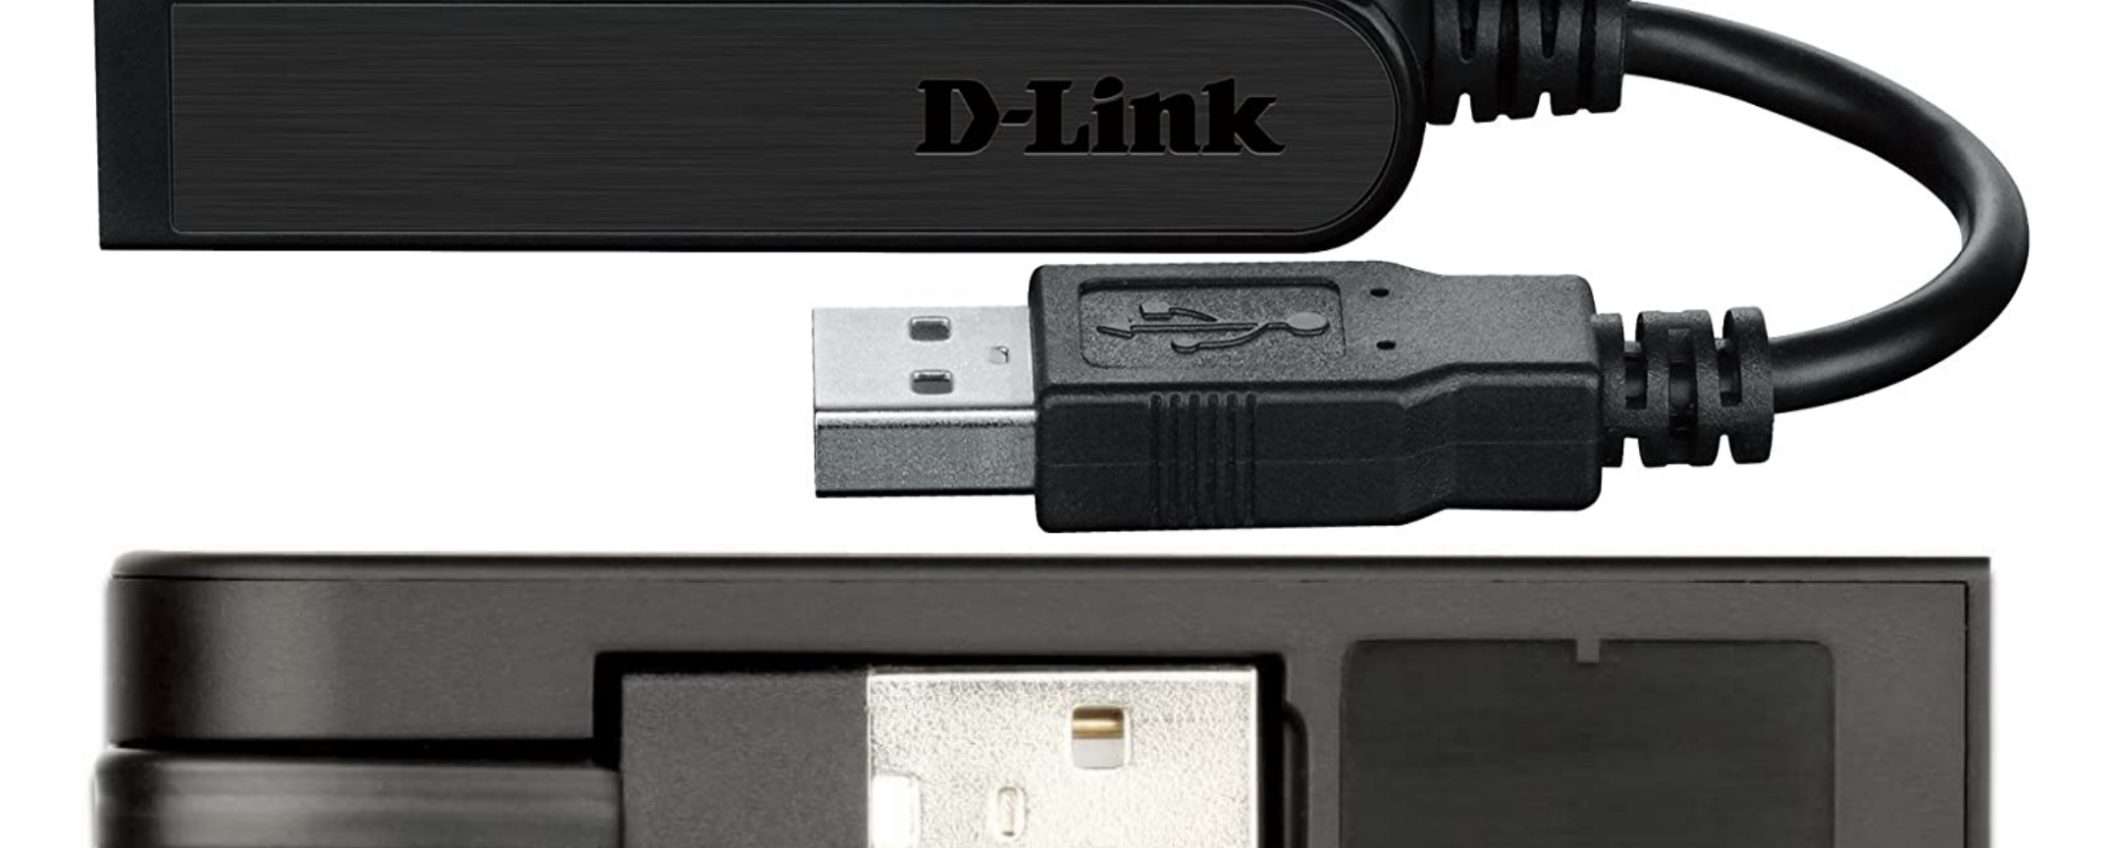 Adattatore di rete D-Link da USB a Ethernet in offerta